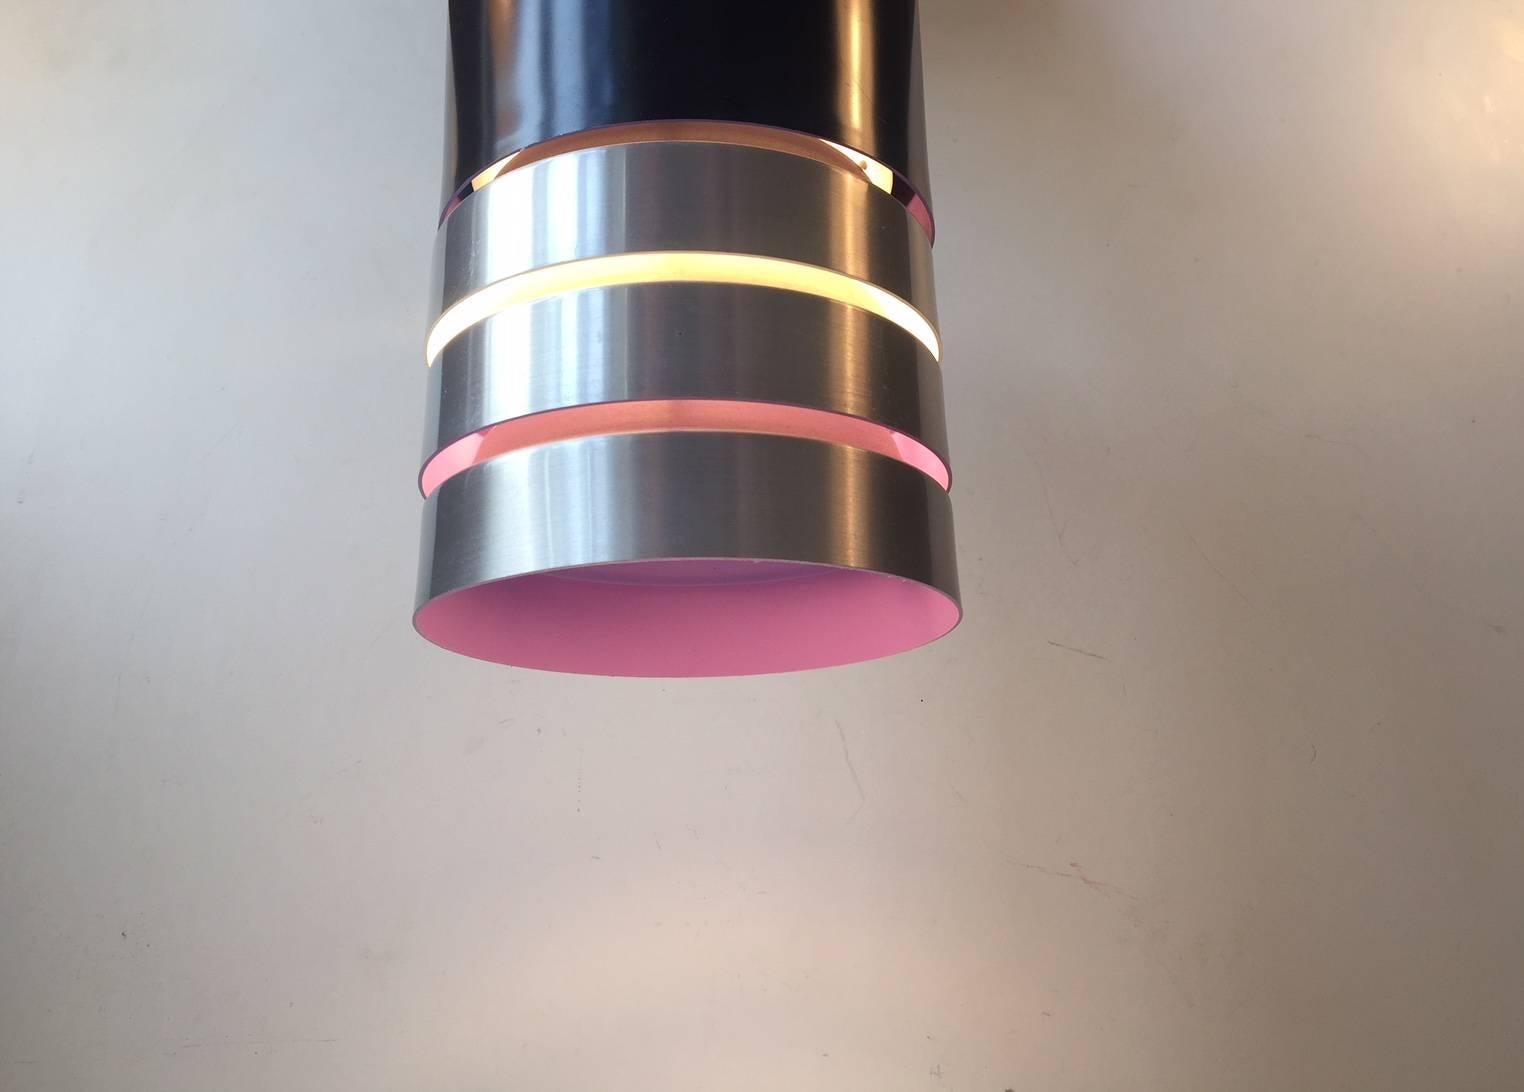 - Lampe suspendue en aluminium de Carl Thore
- Fabriqué par Granhaga Metalindustri, Suède, dans les années 1960-1970
- Des teintes intérieures blanches et violettes qui créent une lumière d'ambiance chaleureuse
- Monté avec 3 mètres de nouveau